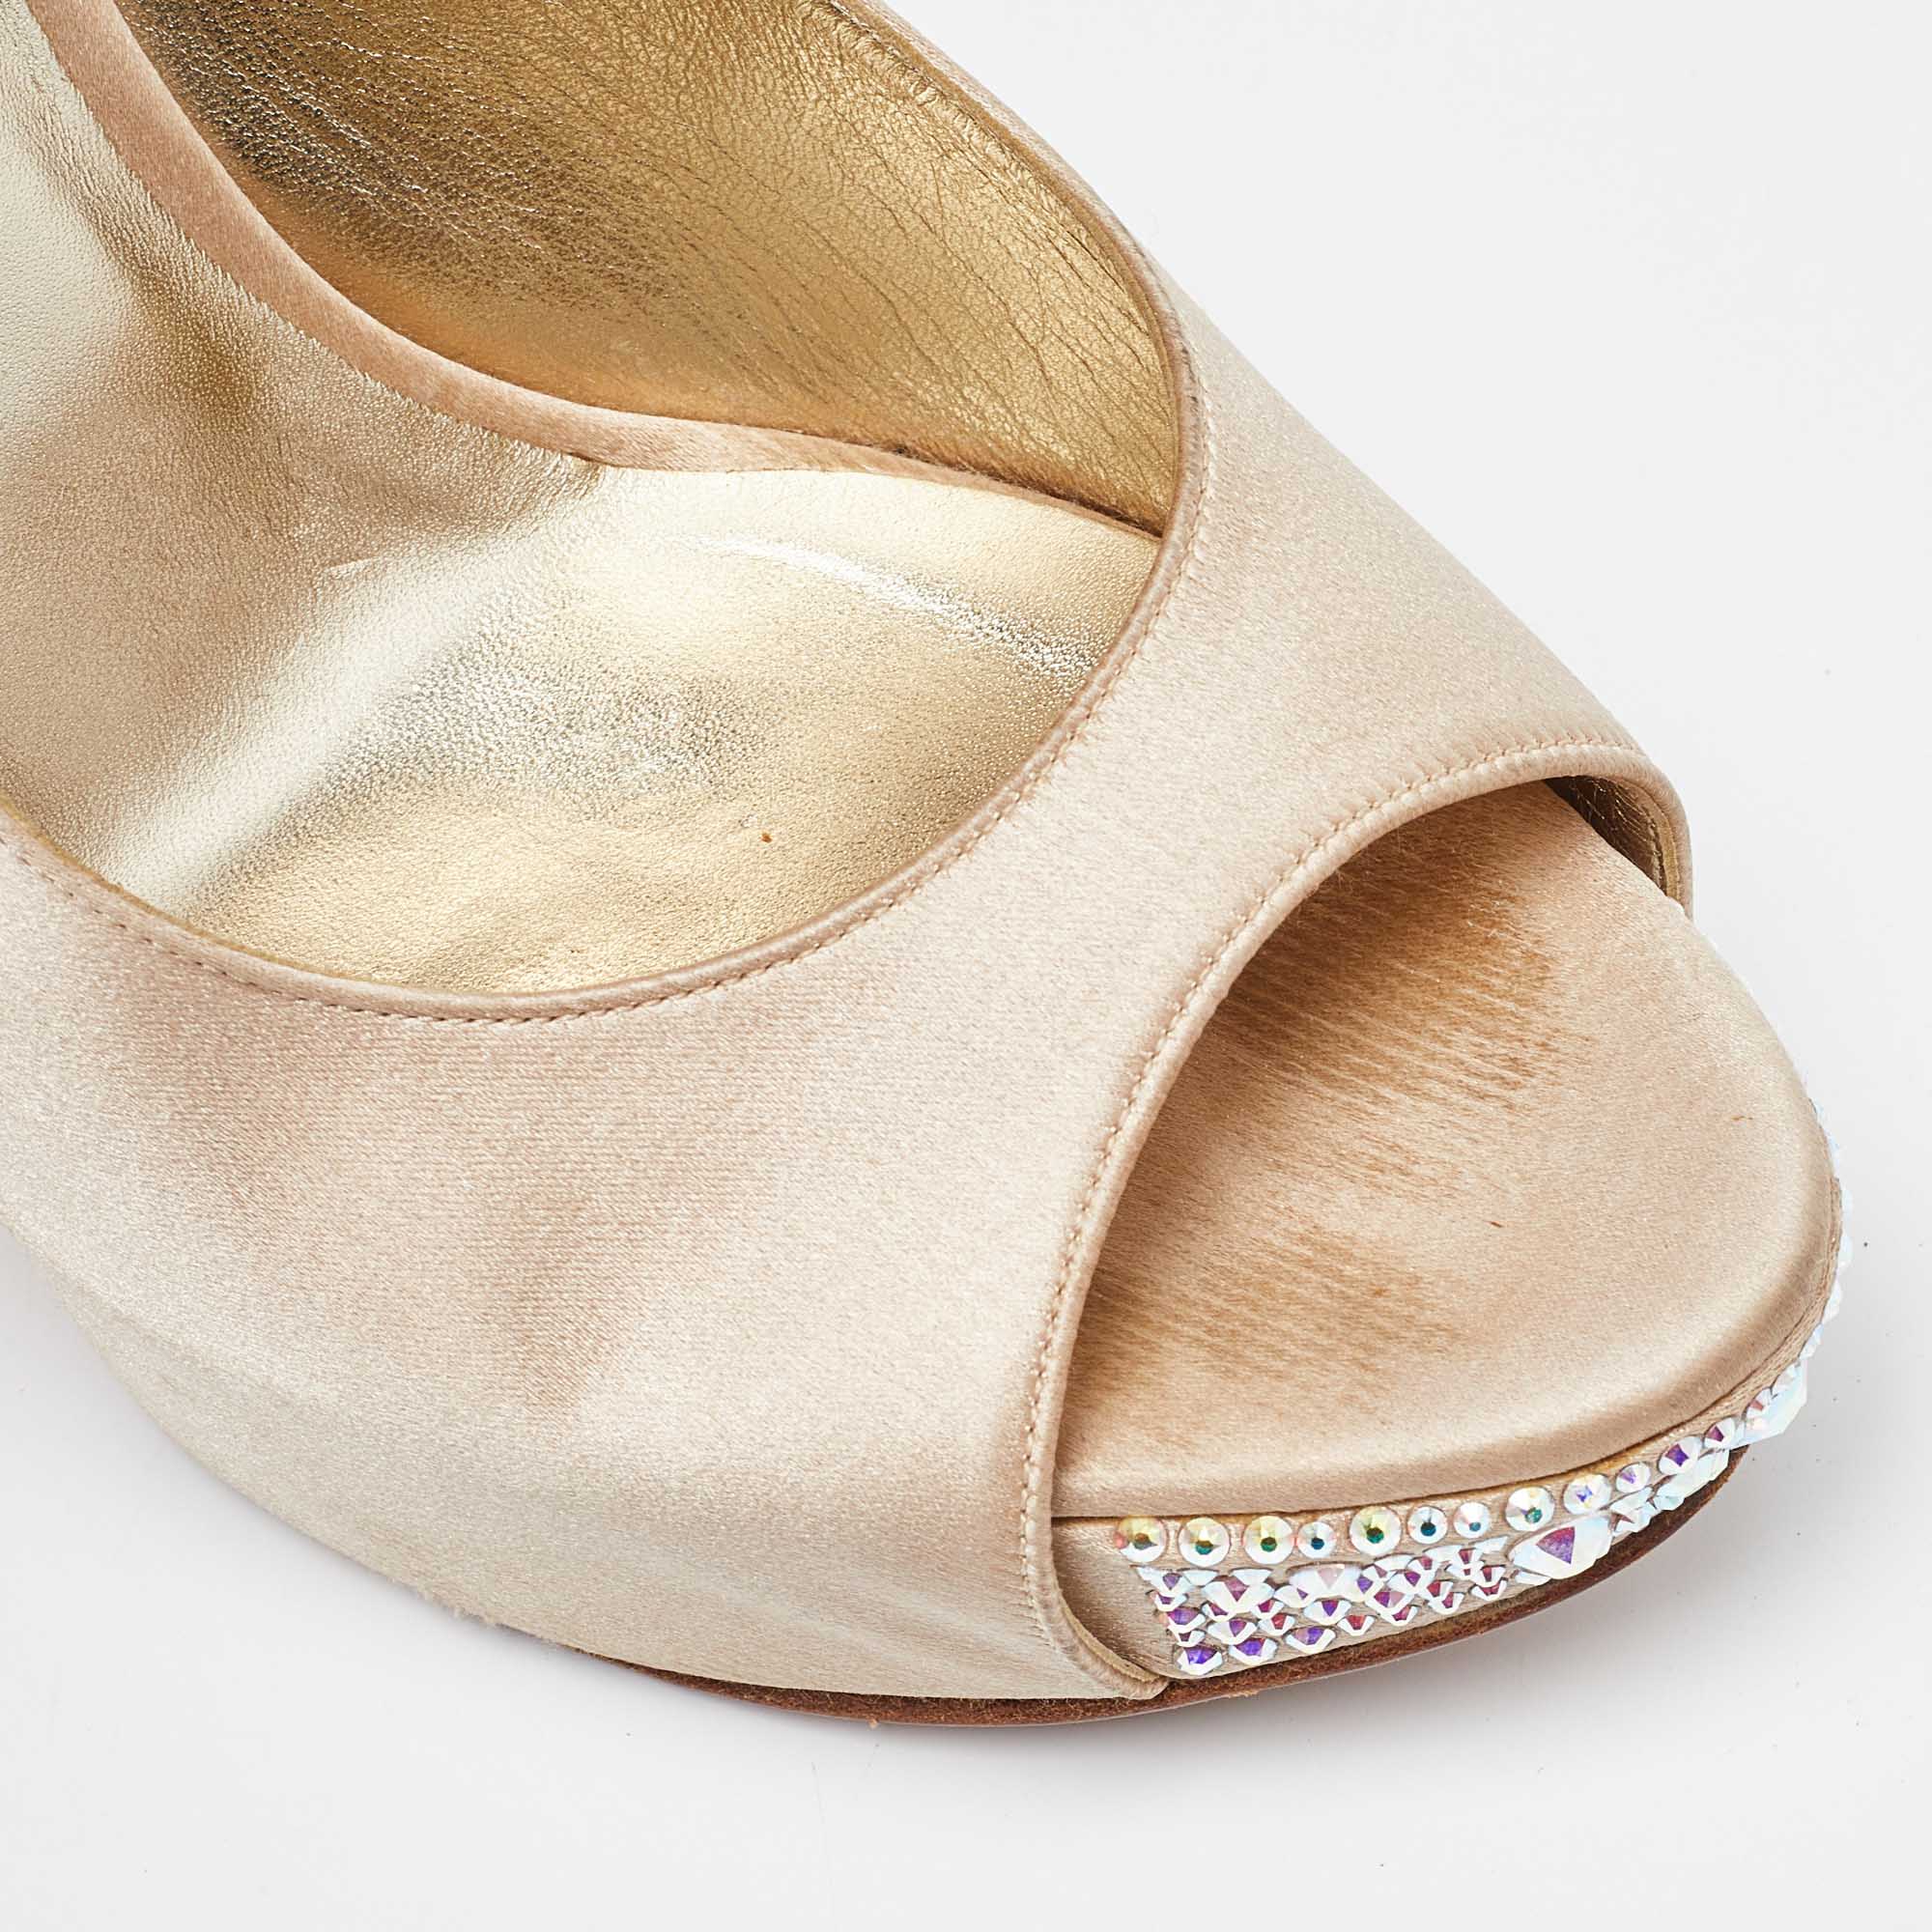 Gina Beige Satin Crystal Embellished Peep Toe Slingback Platform Sandals Size 40.5